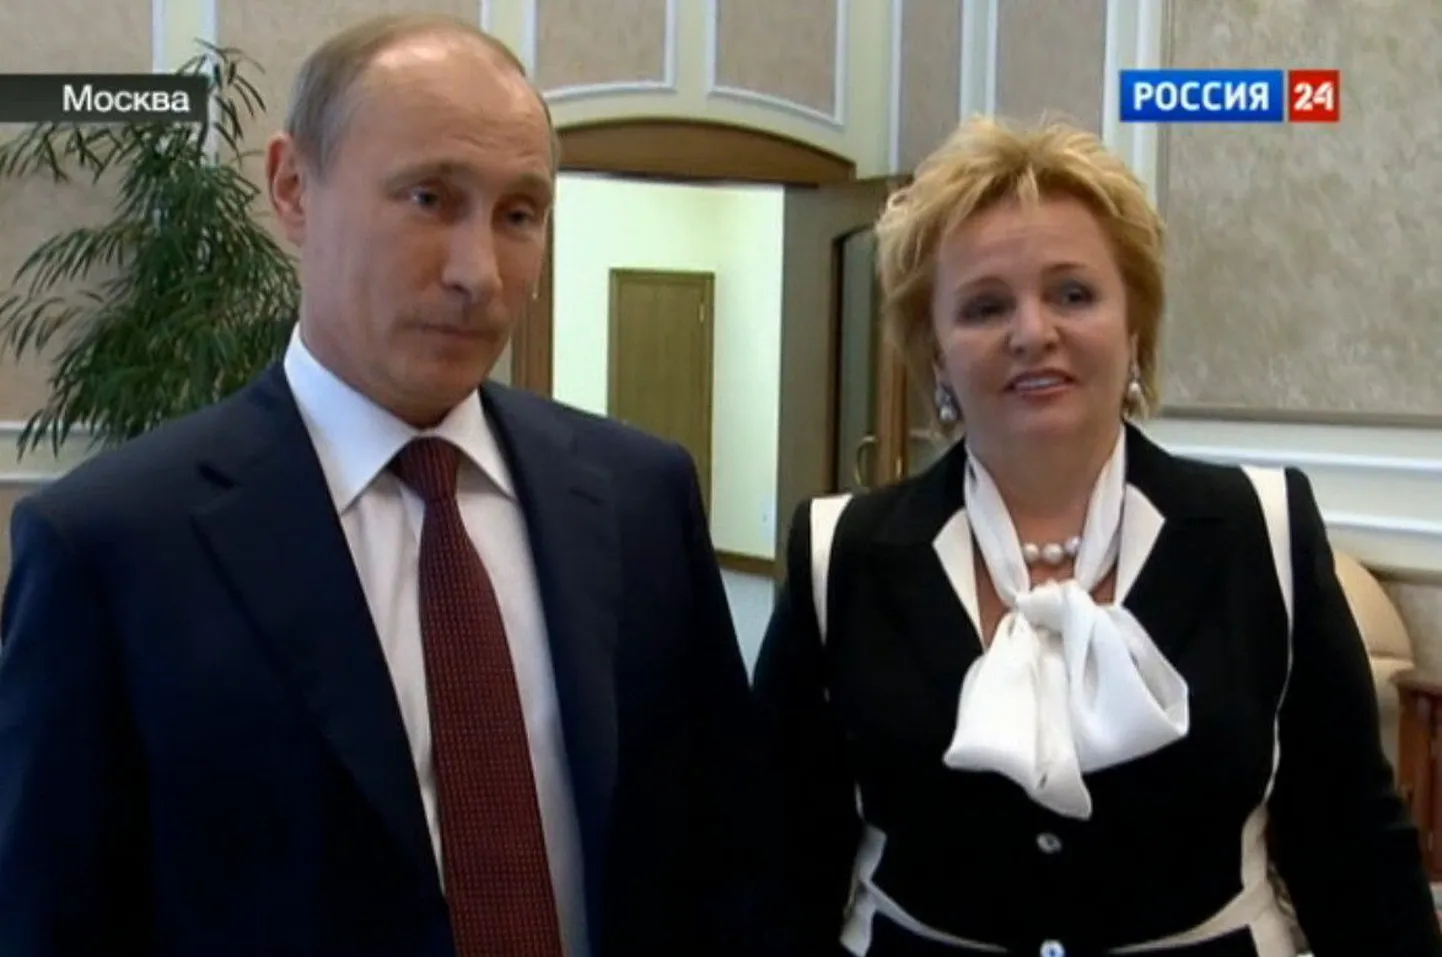 Vene riigipea Vladimir Putin ja Ljudmila 2013. aastal.